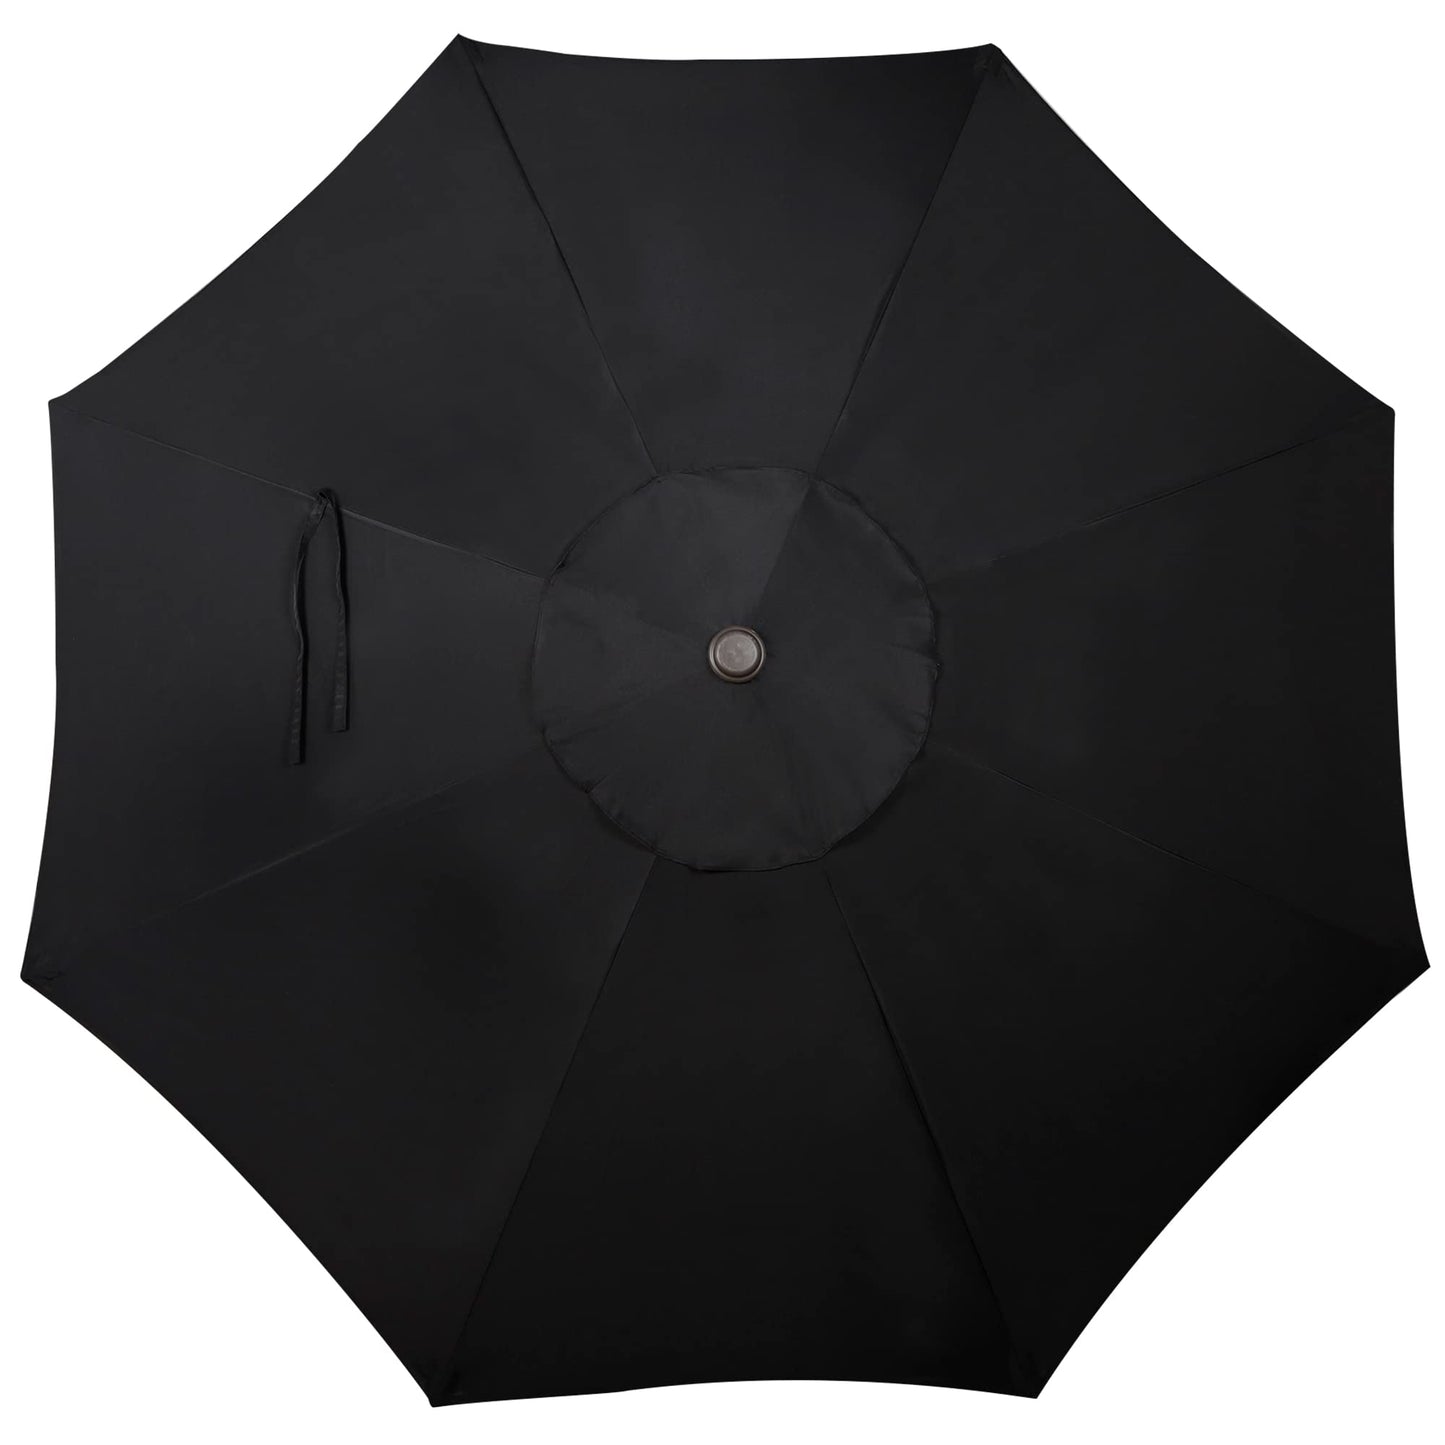 Patio Umbrella Striped with Push Button